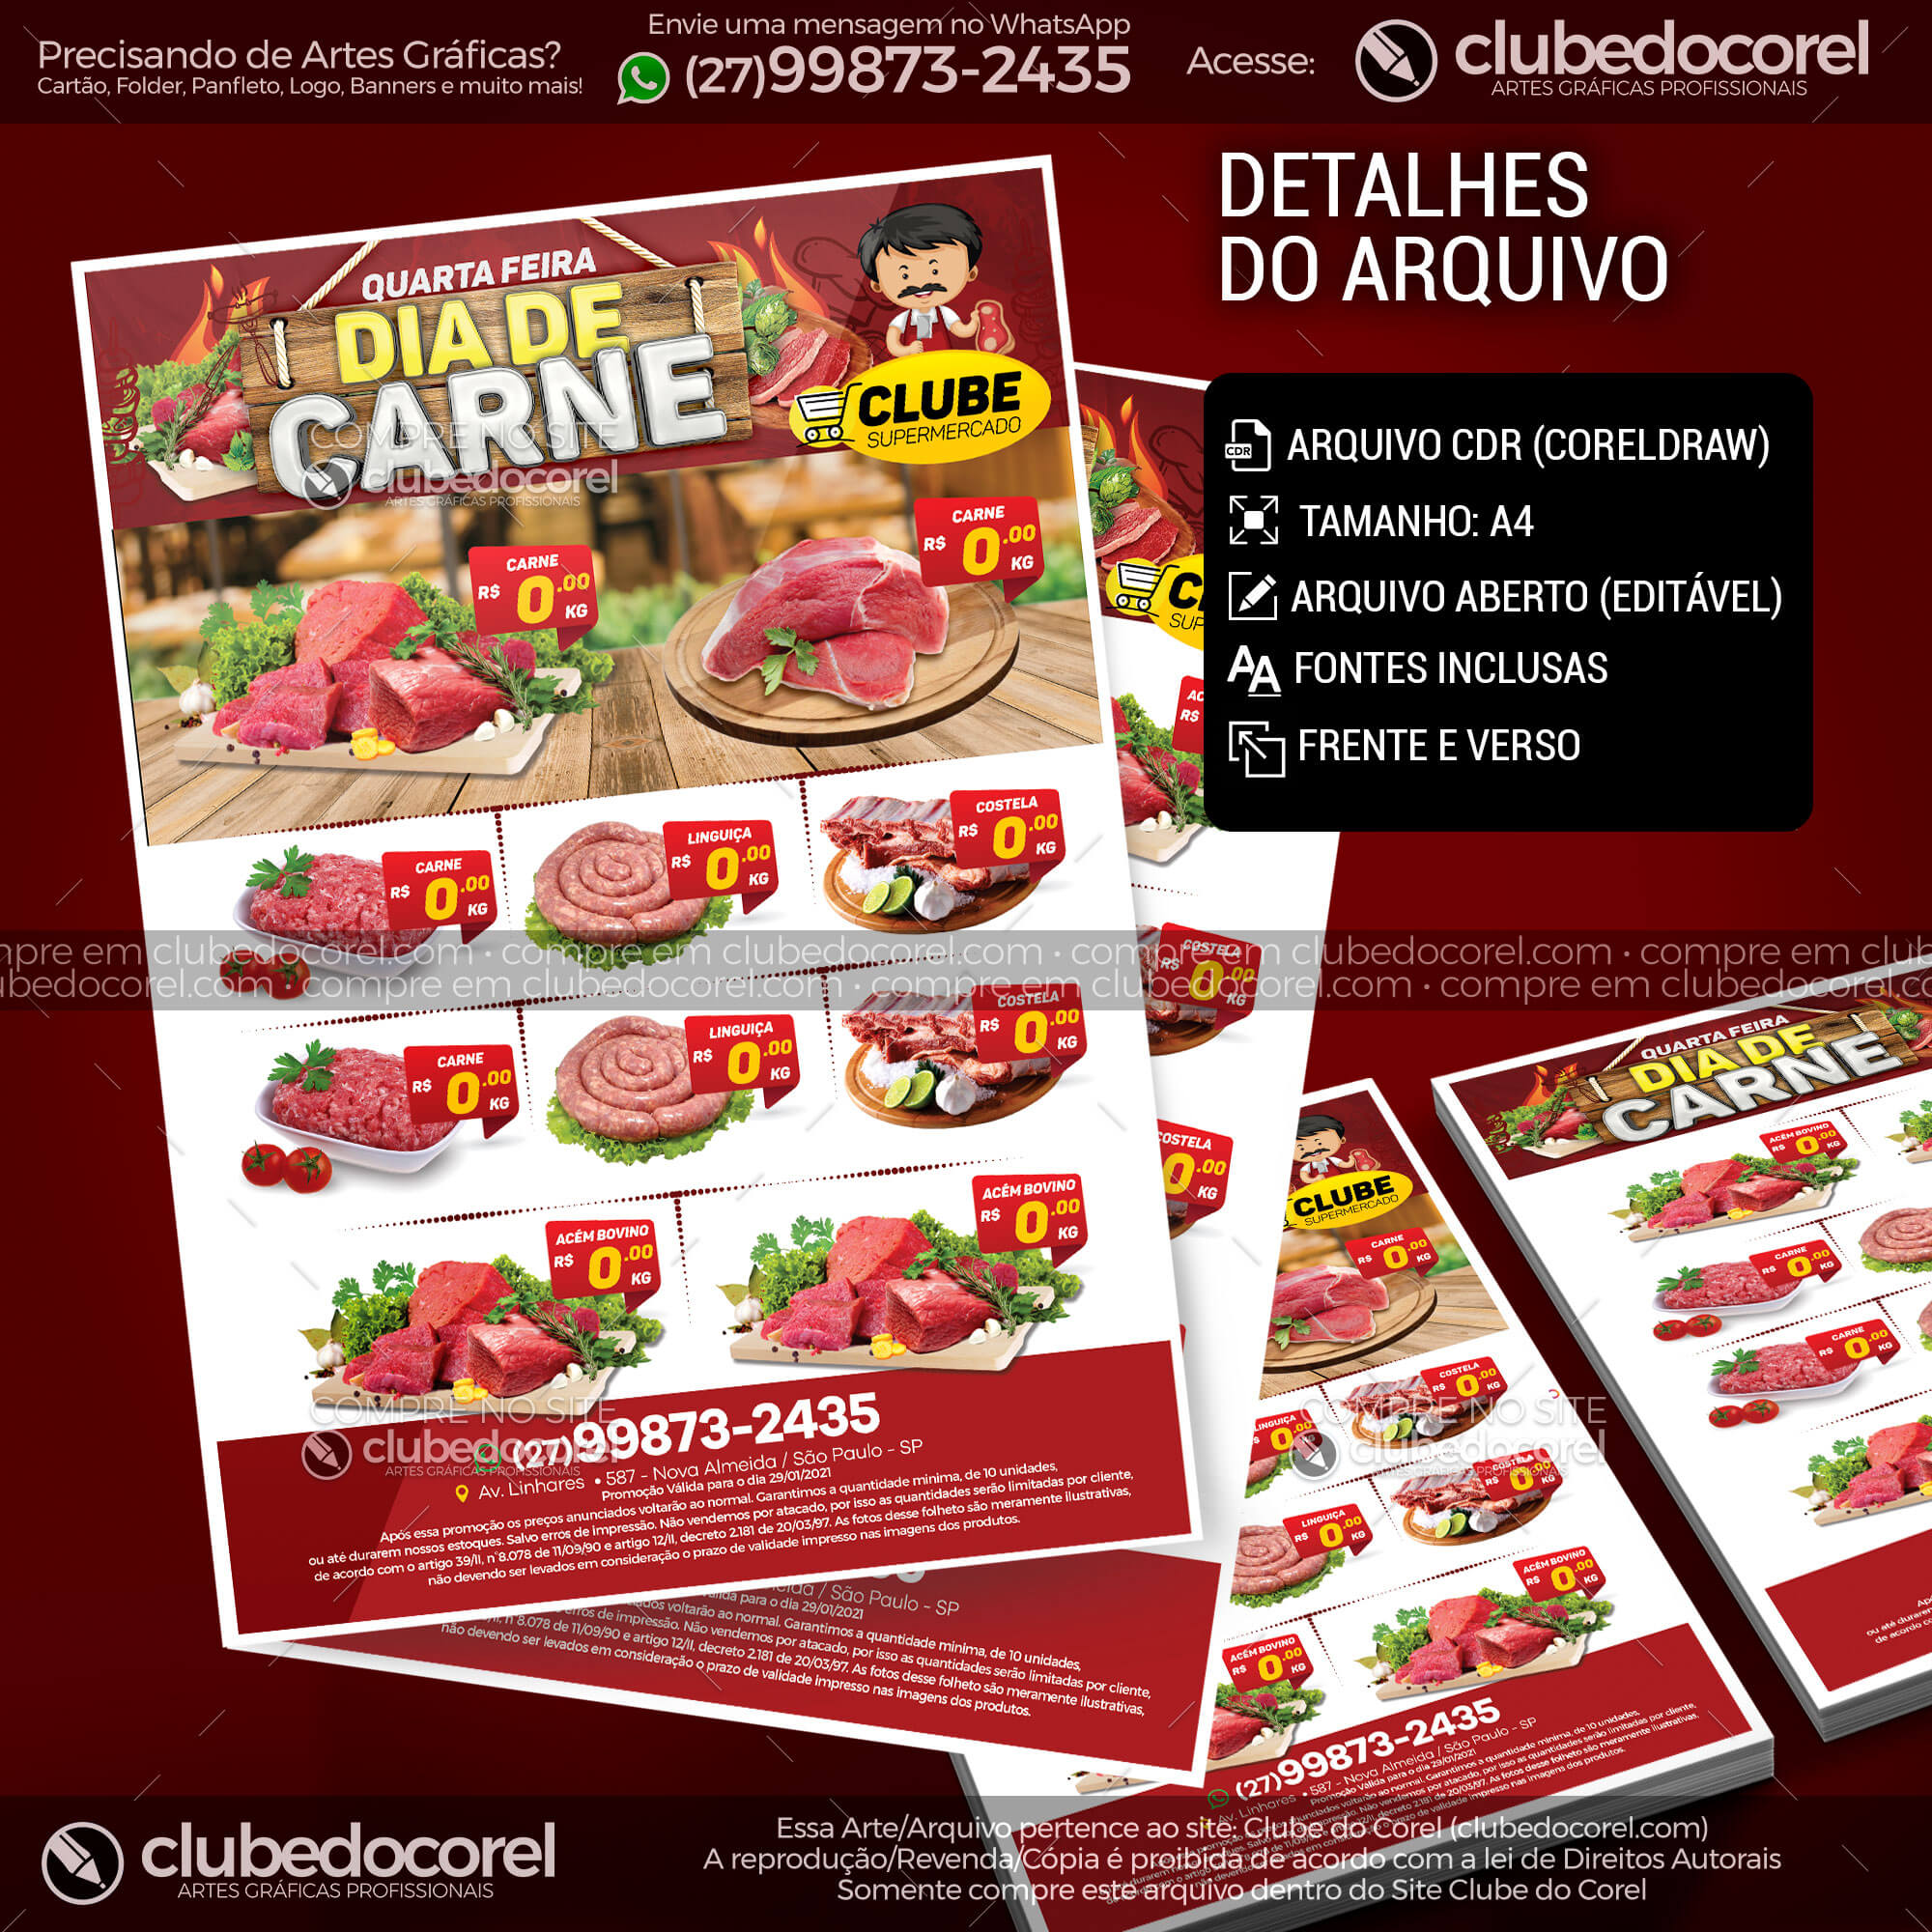 Encarte Supermercado Dia de Carne Modelo Editavel CDR PDF Clube do Corel 03